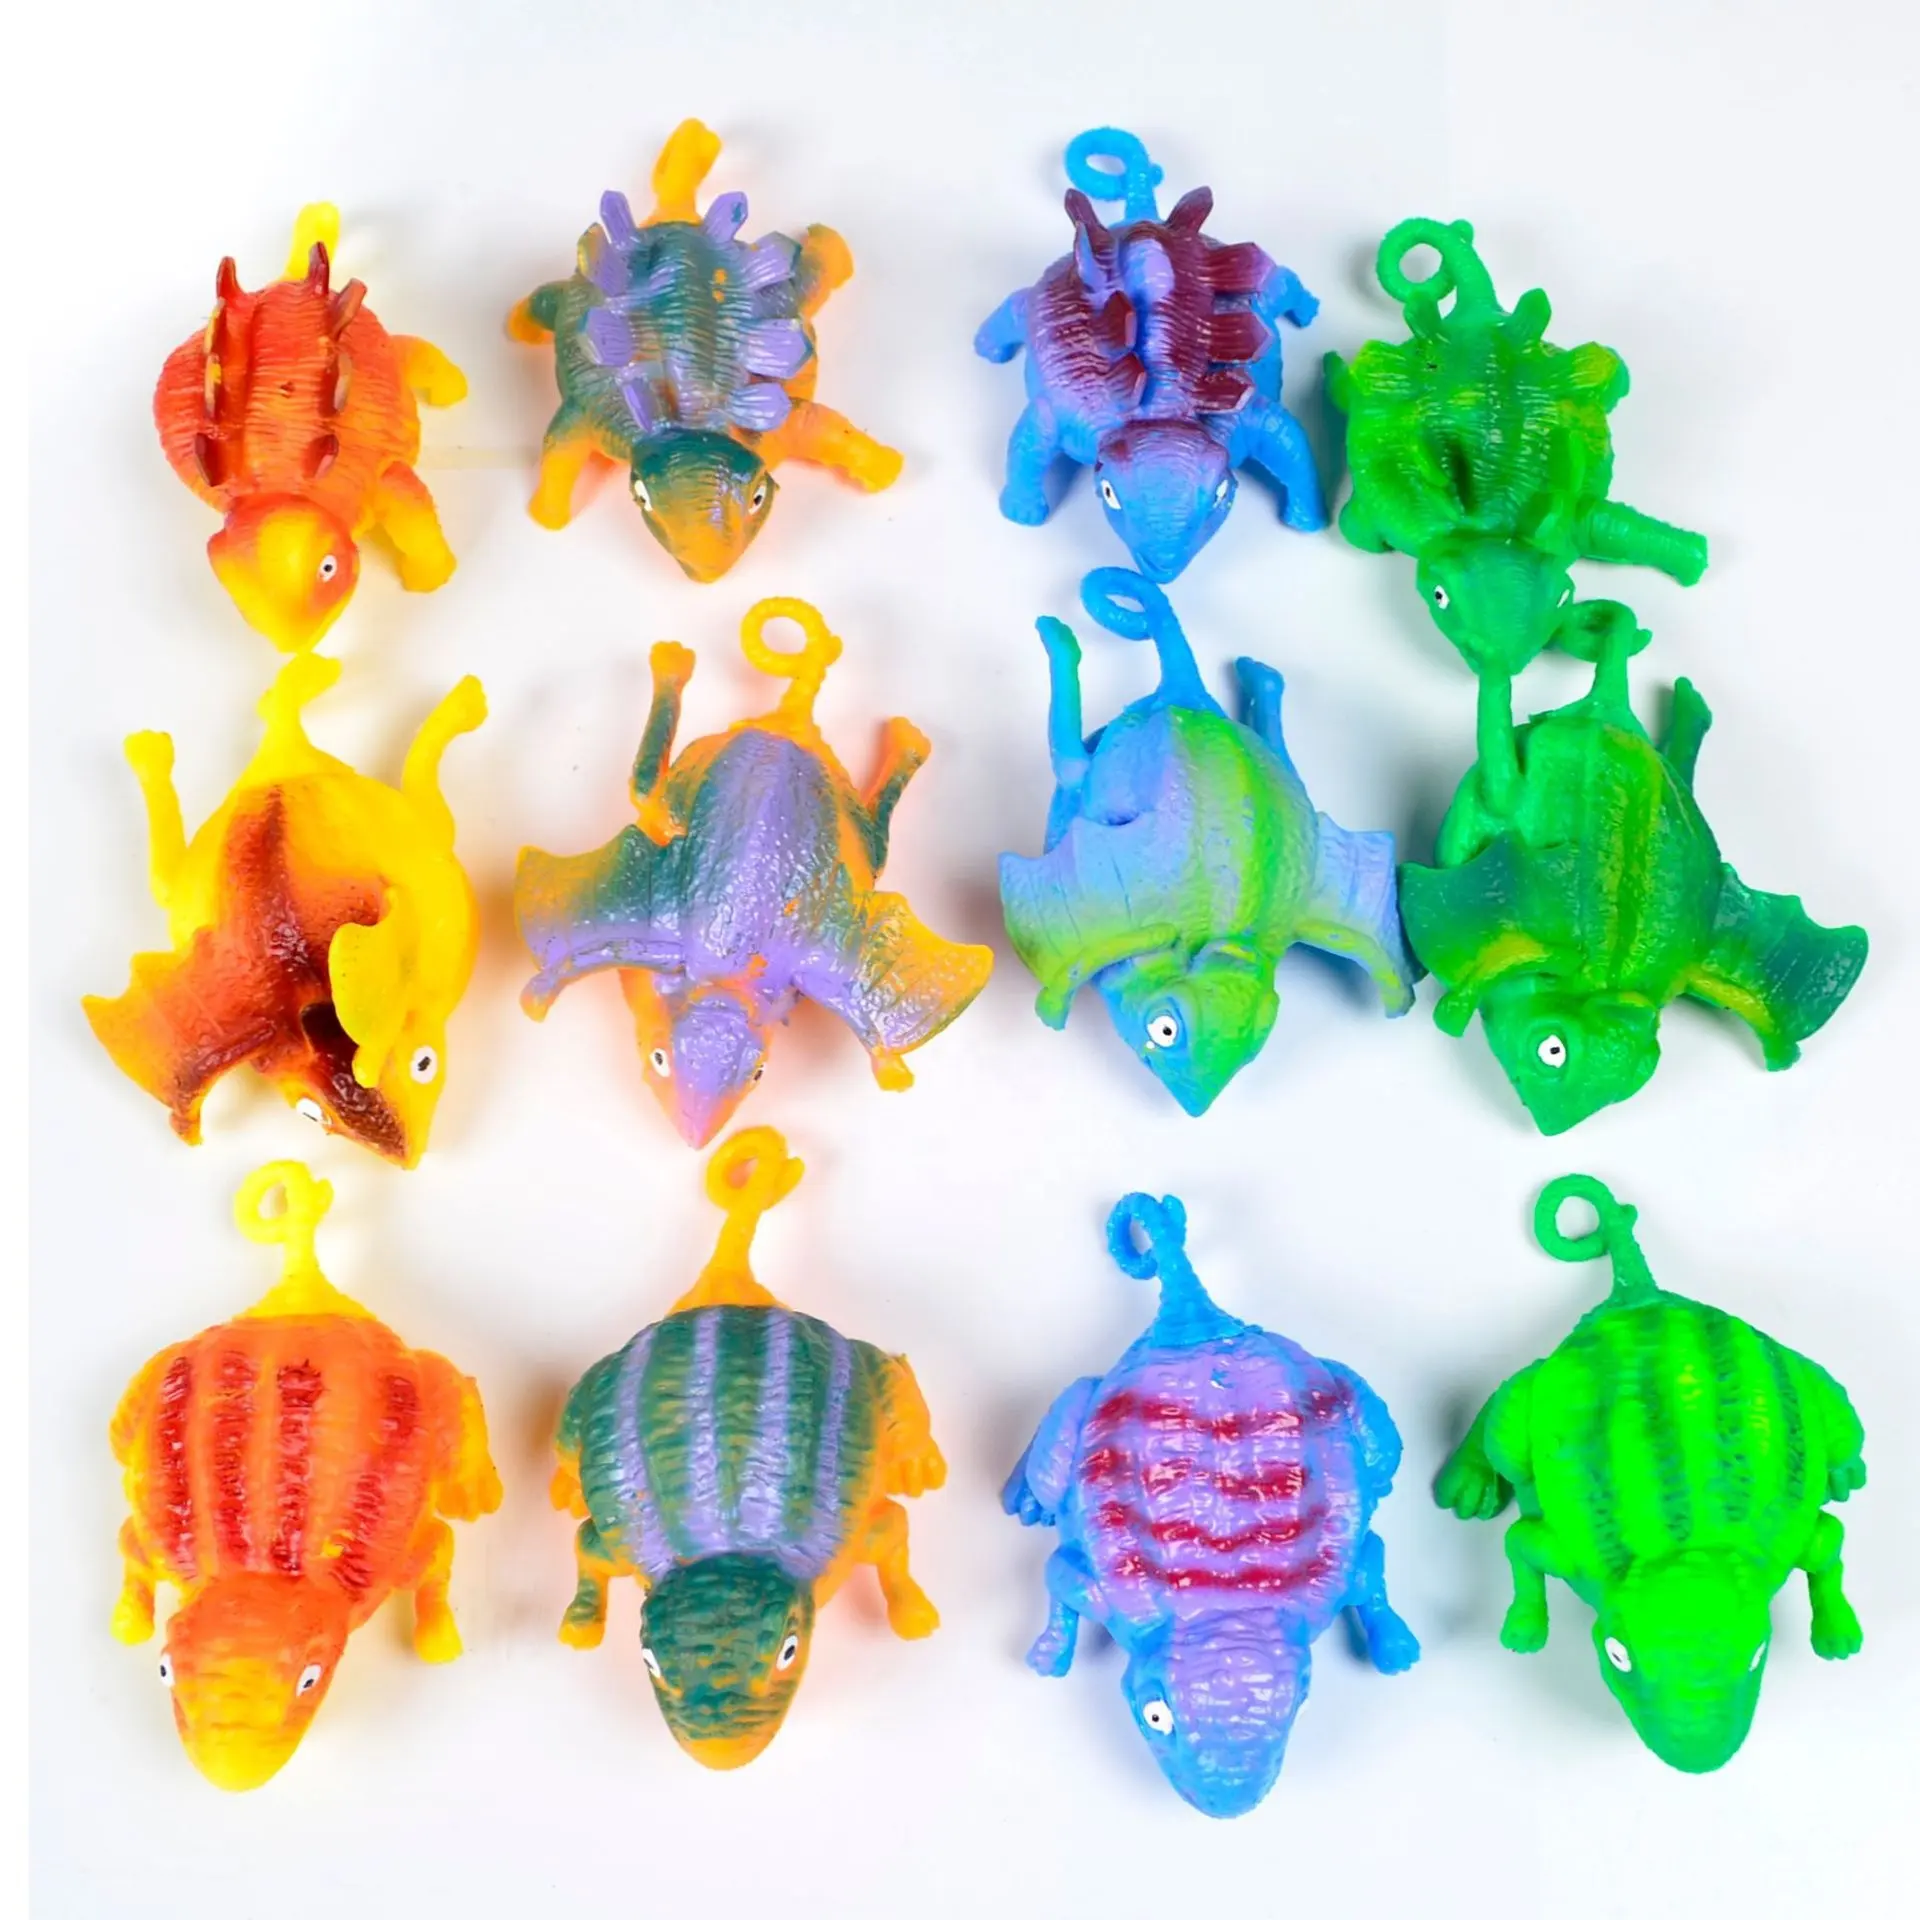 Недорогой Симпатичный Динозавр в форме животного, воздушный шар, сжимаемые игрушки для детей, надувной шар